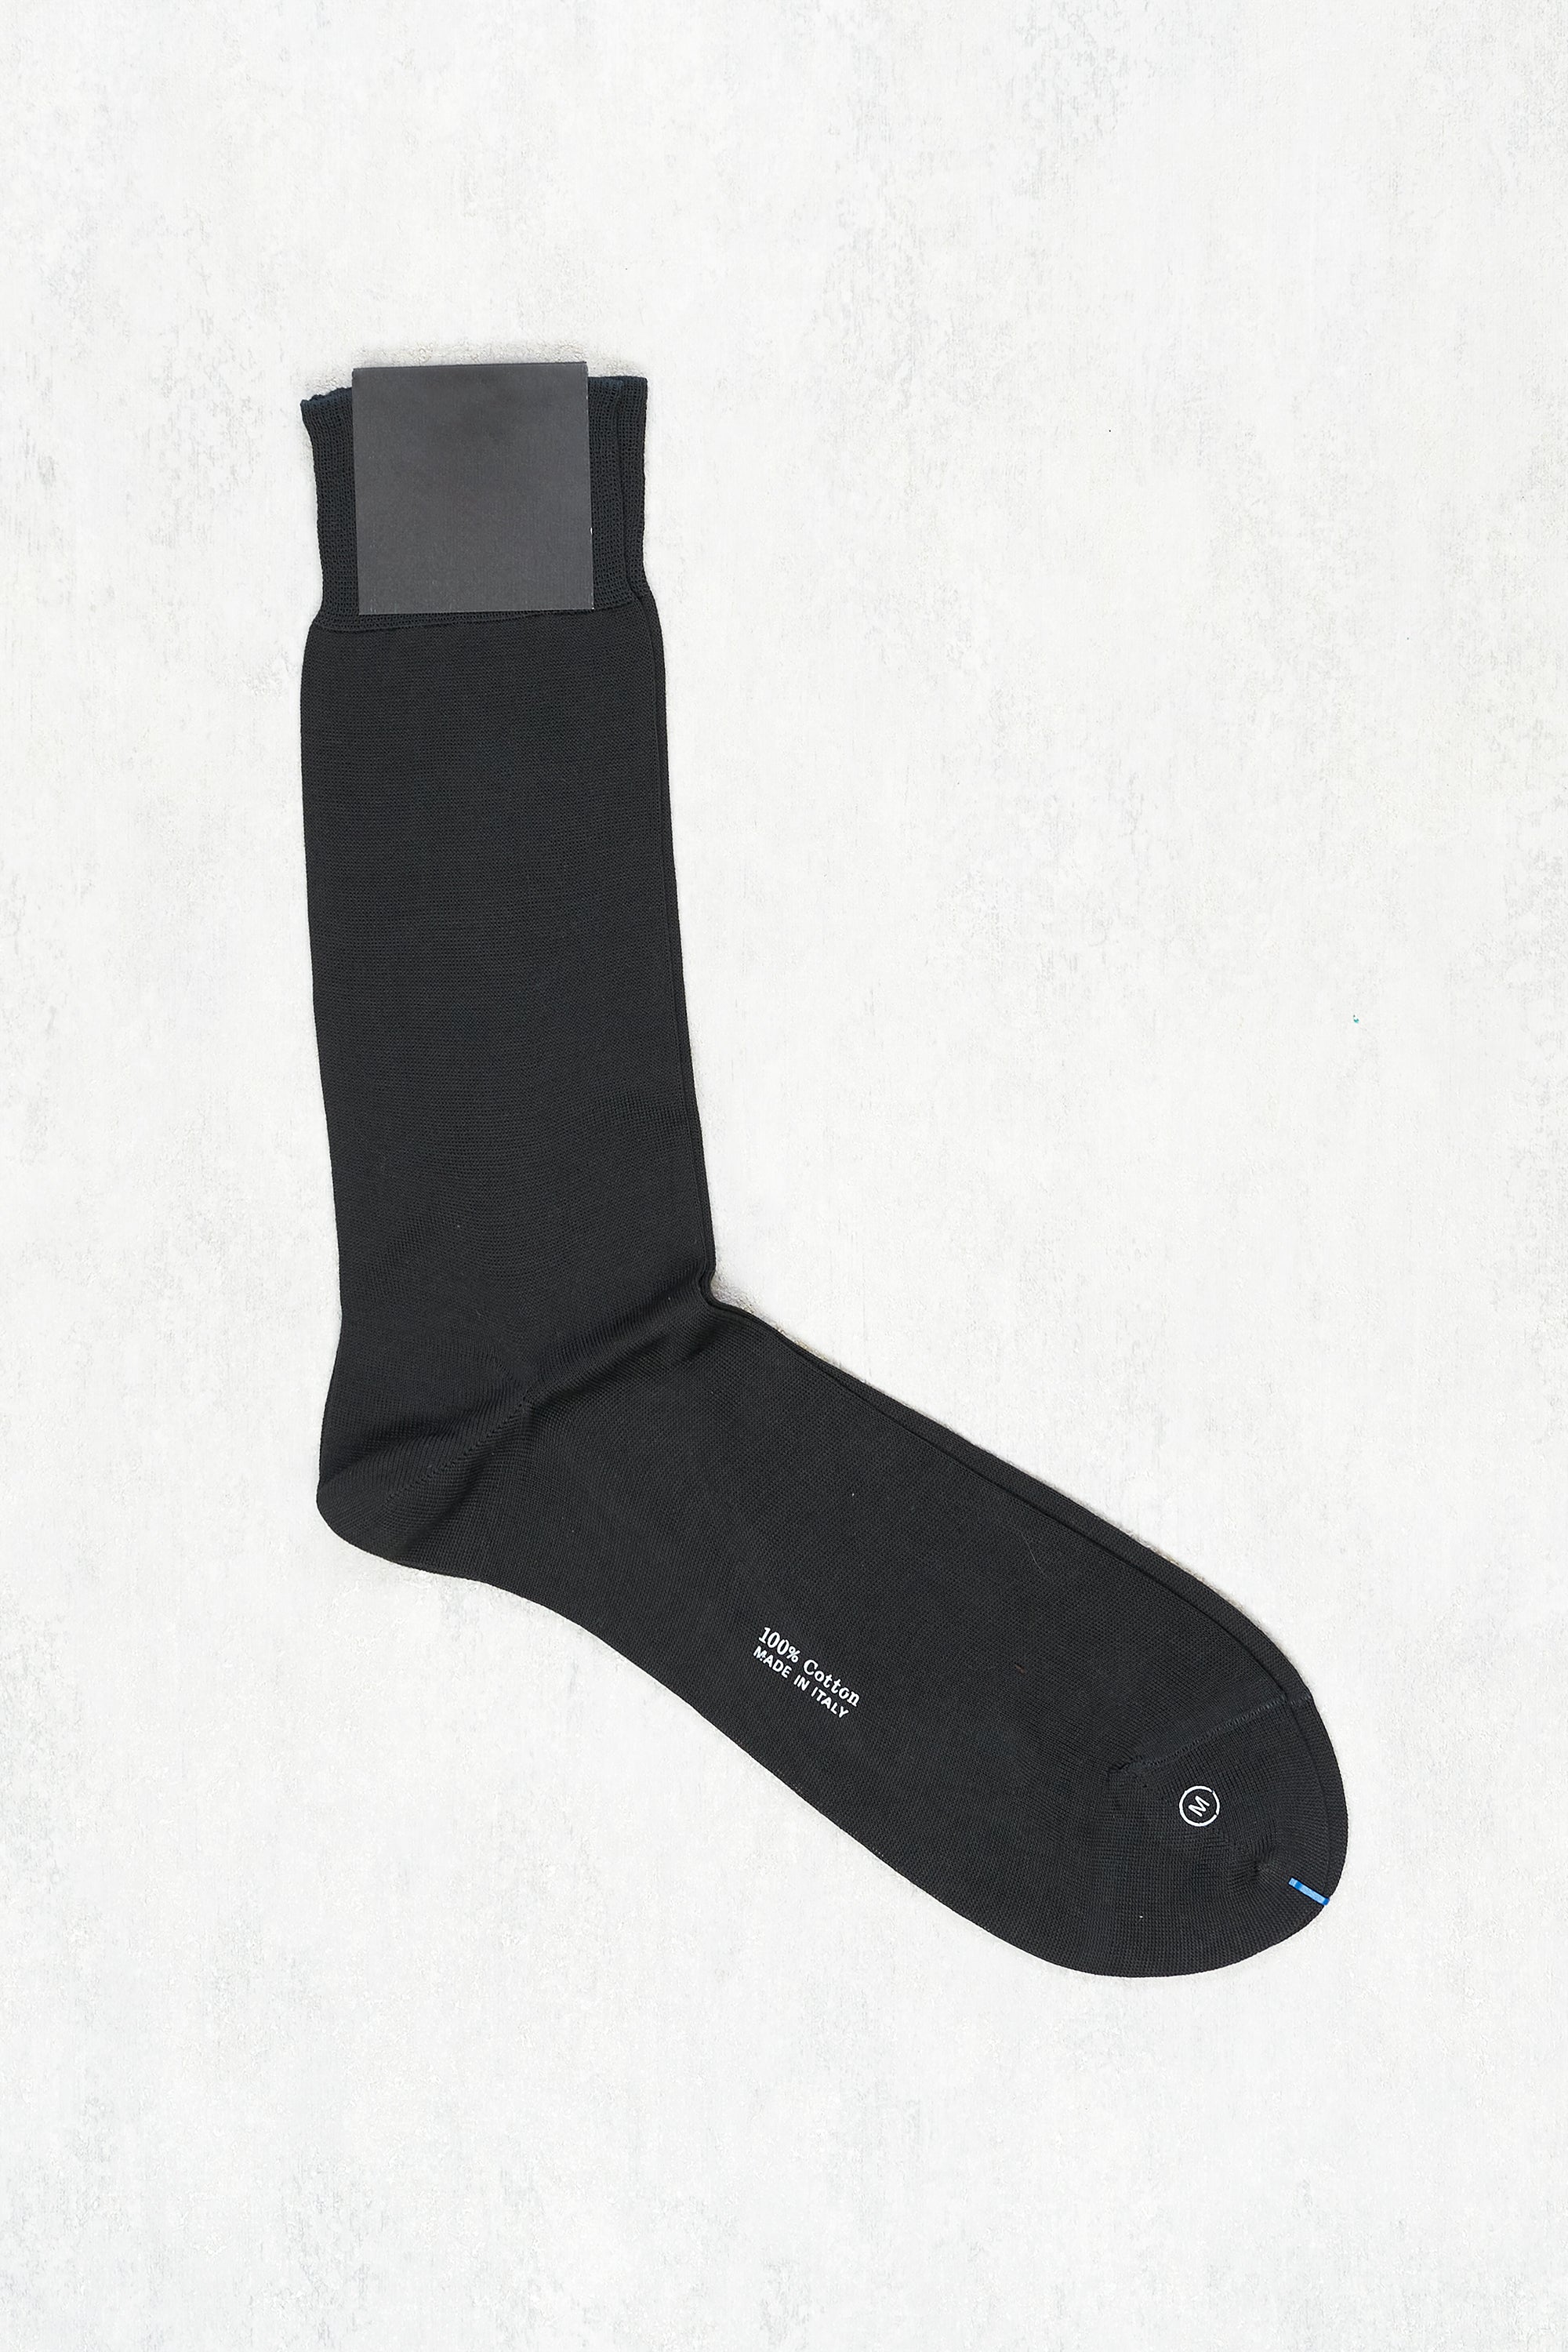 Sorley Grey Plain Short Socks